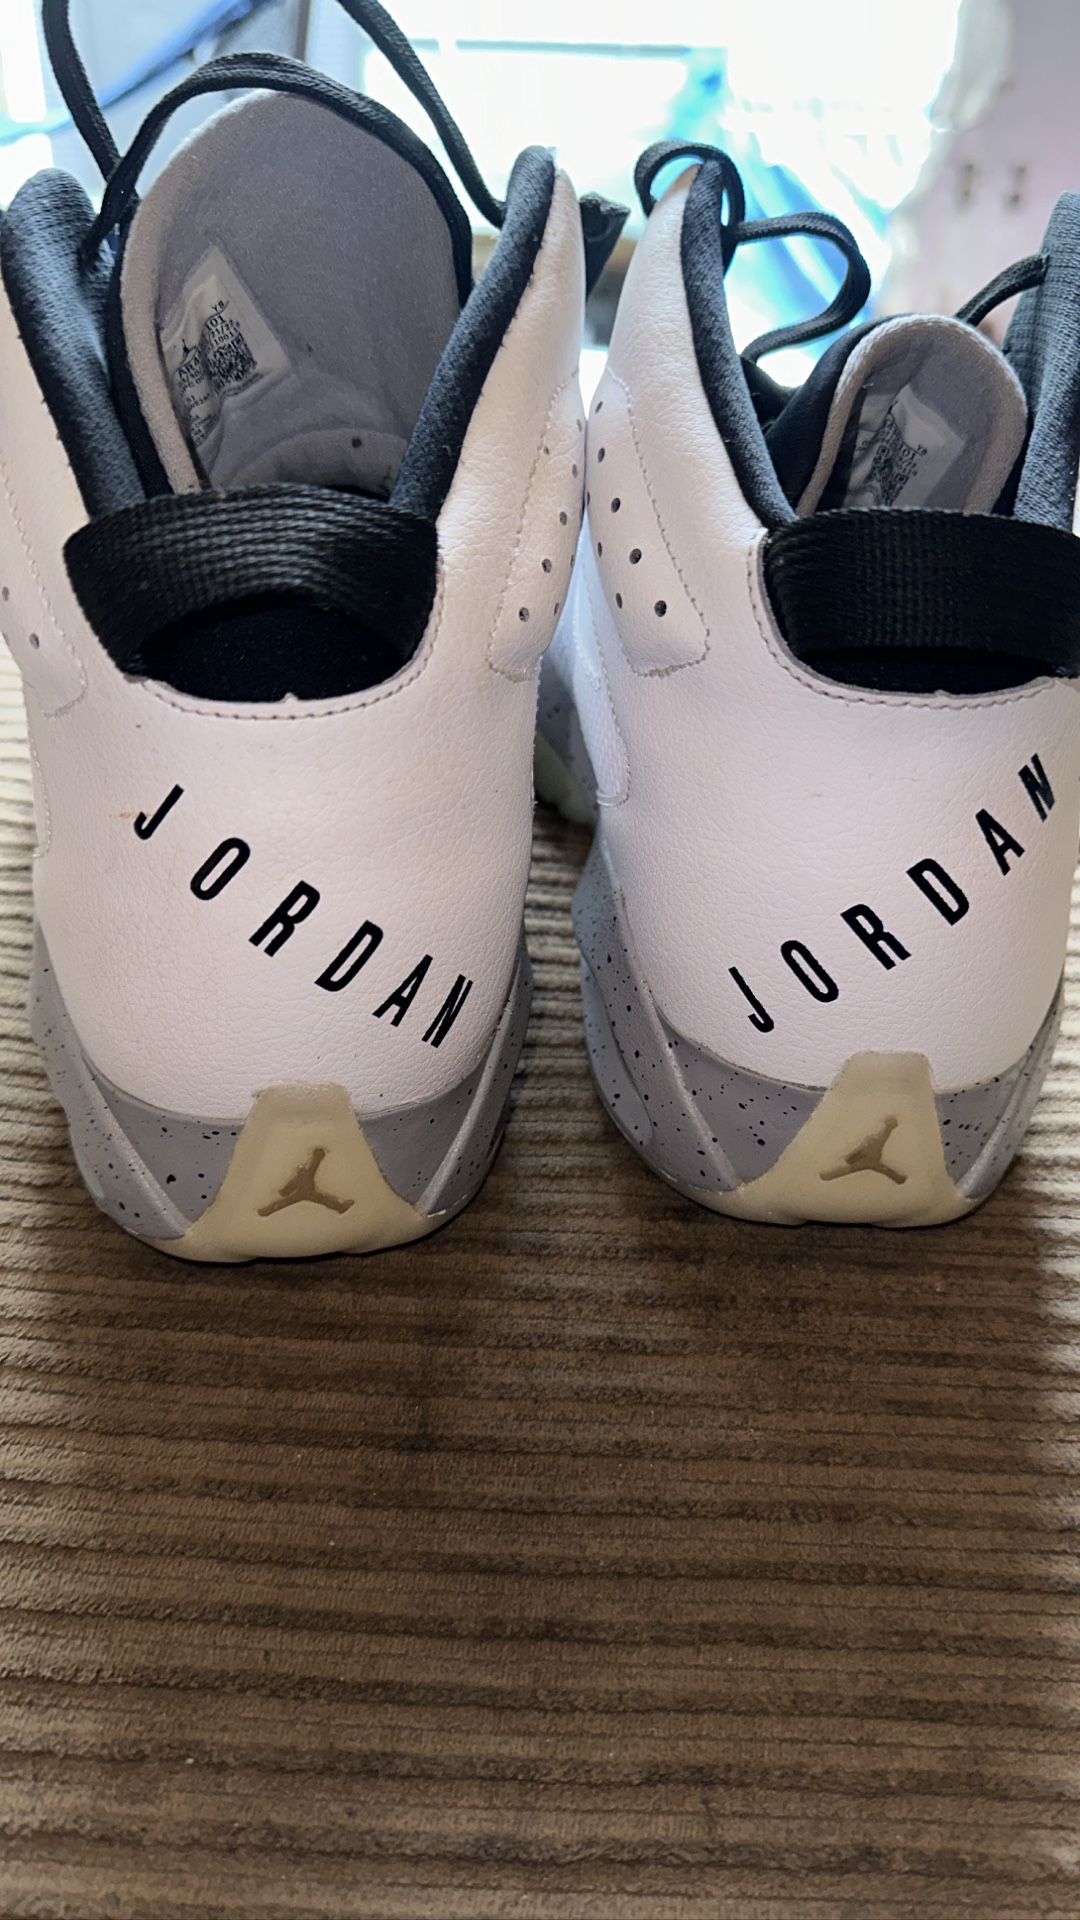  / White Jordan’s /brown Jordan’s Nike 